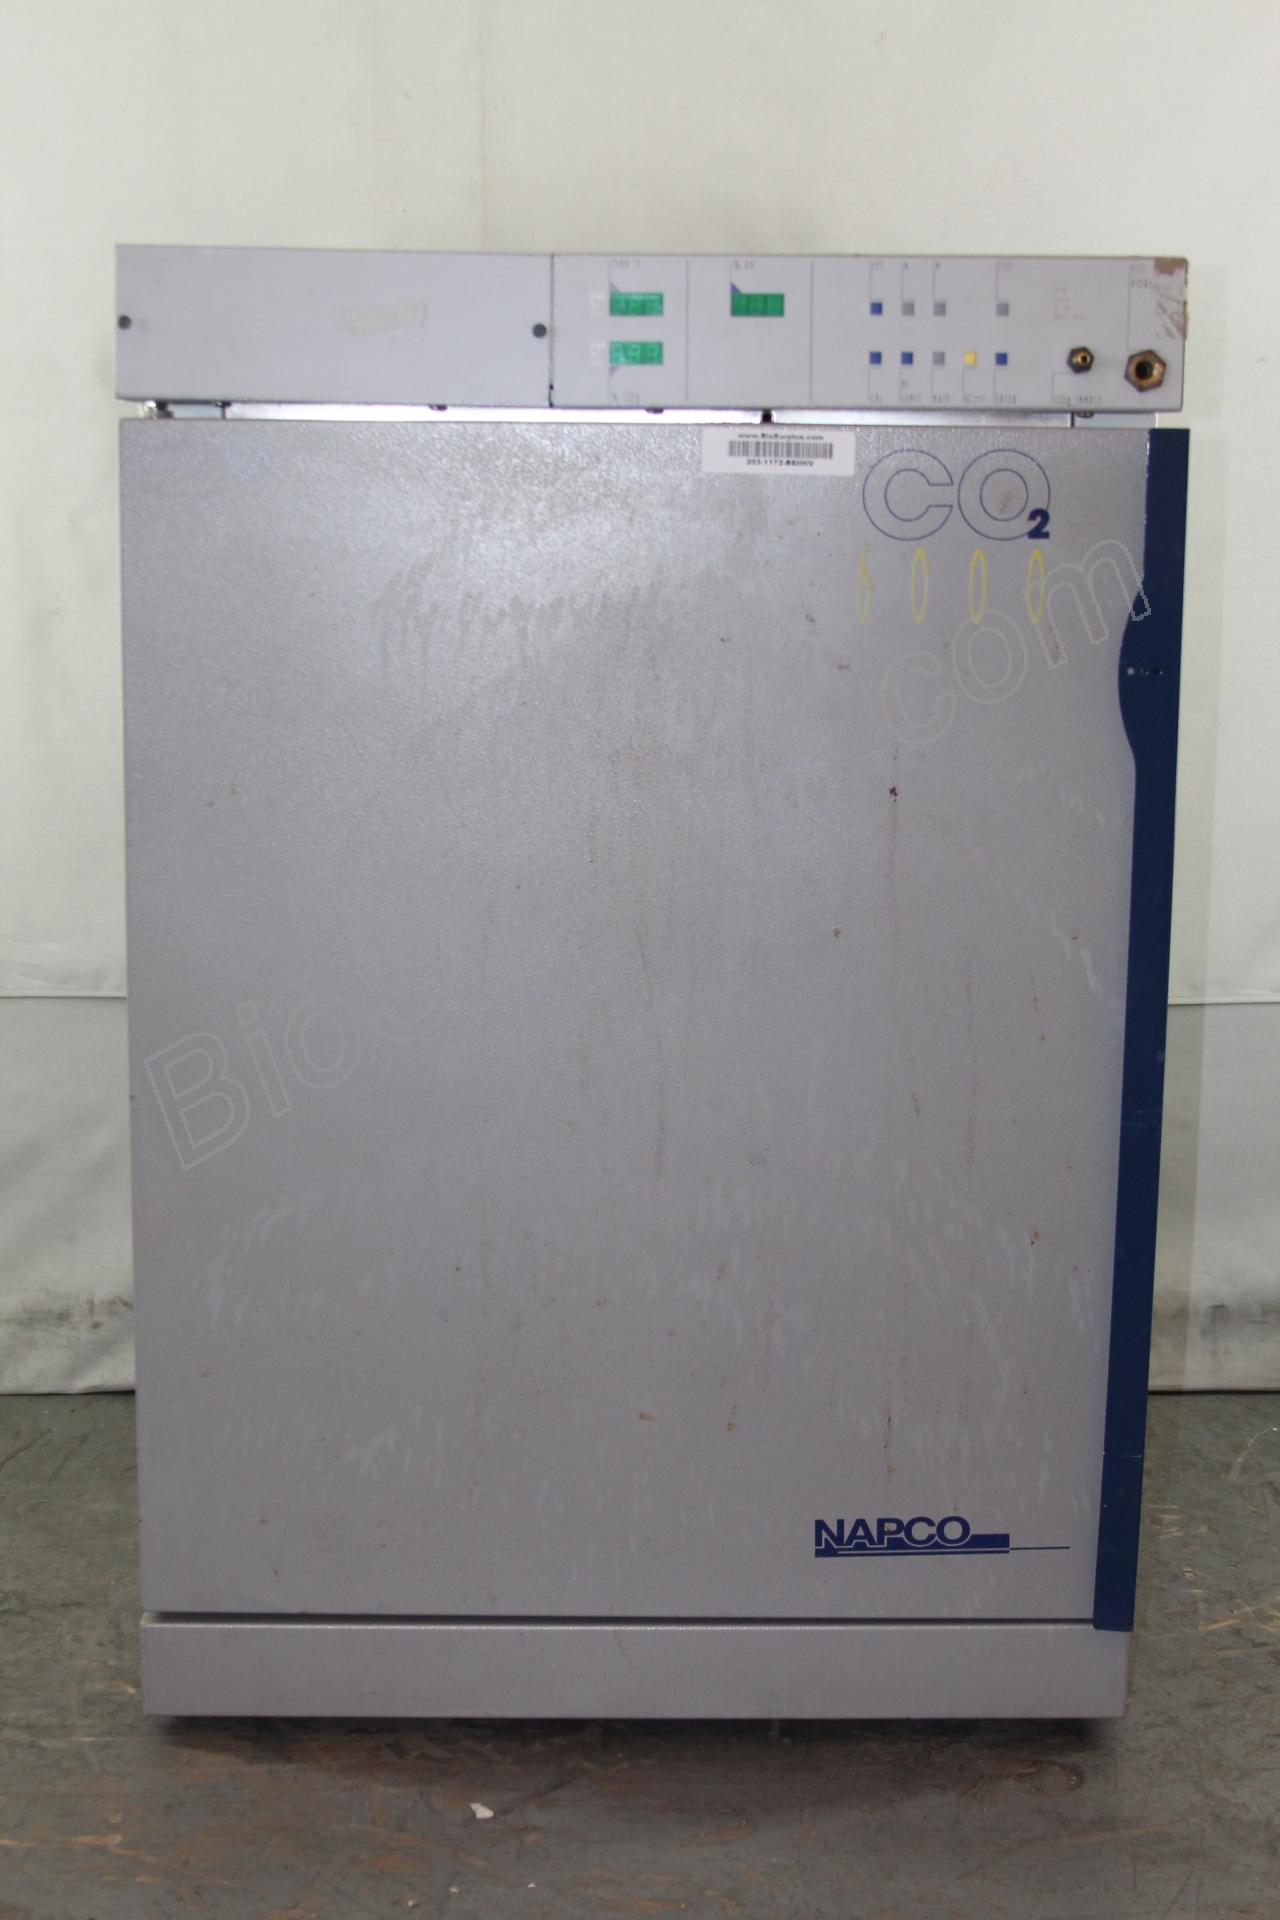 NAPCO CO2 incubator